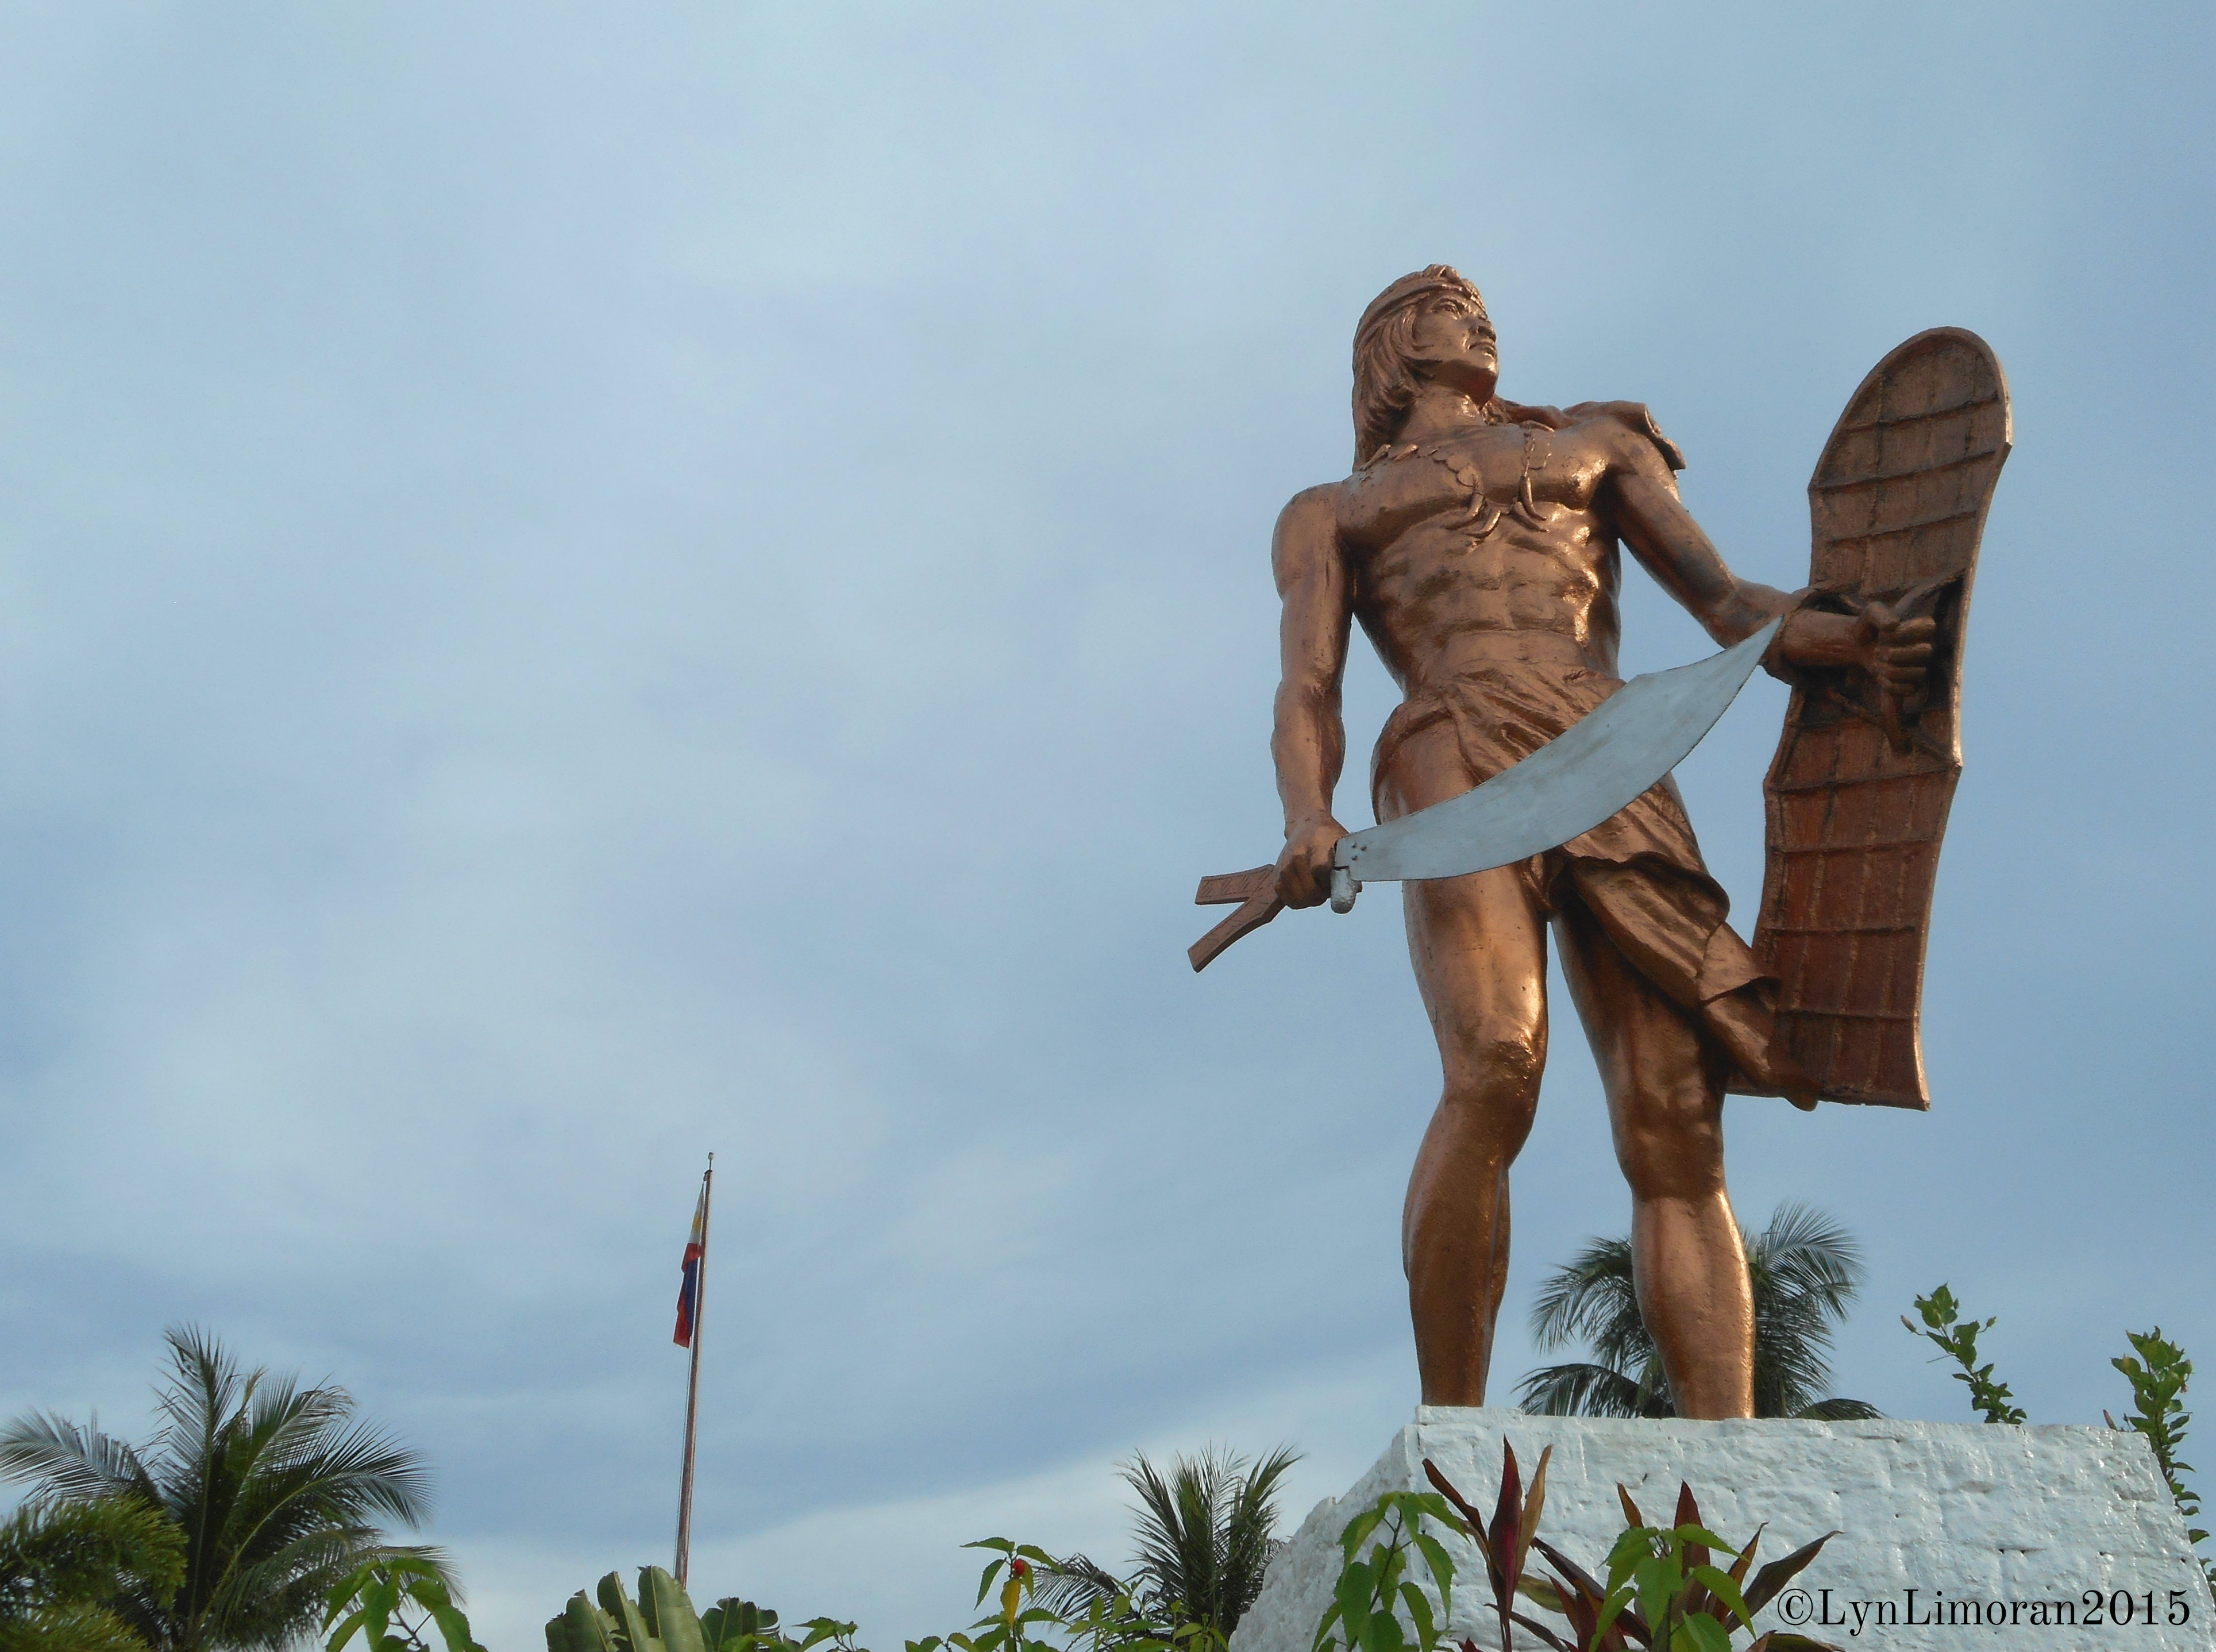 The bronze statue of Lapu-Lapu.